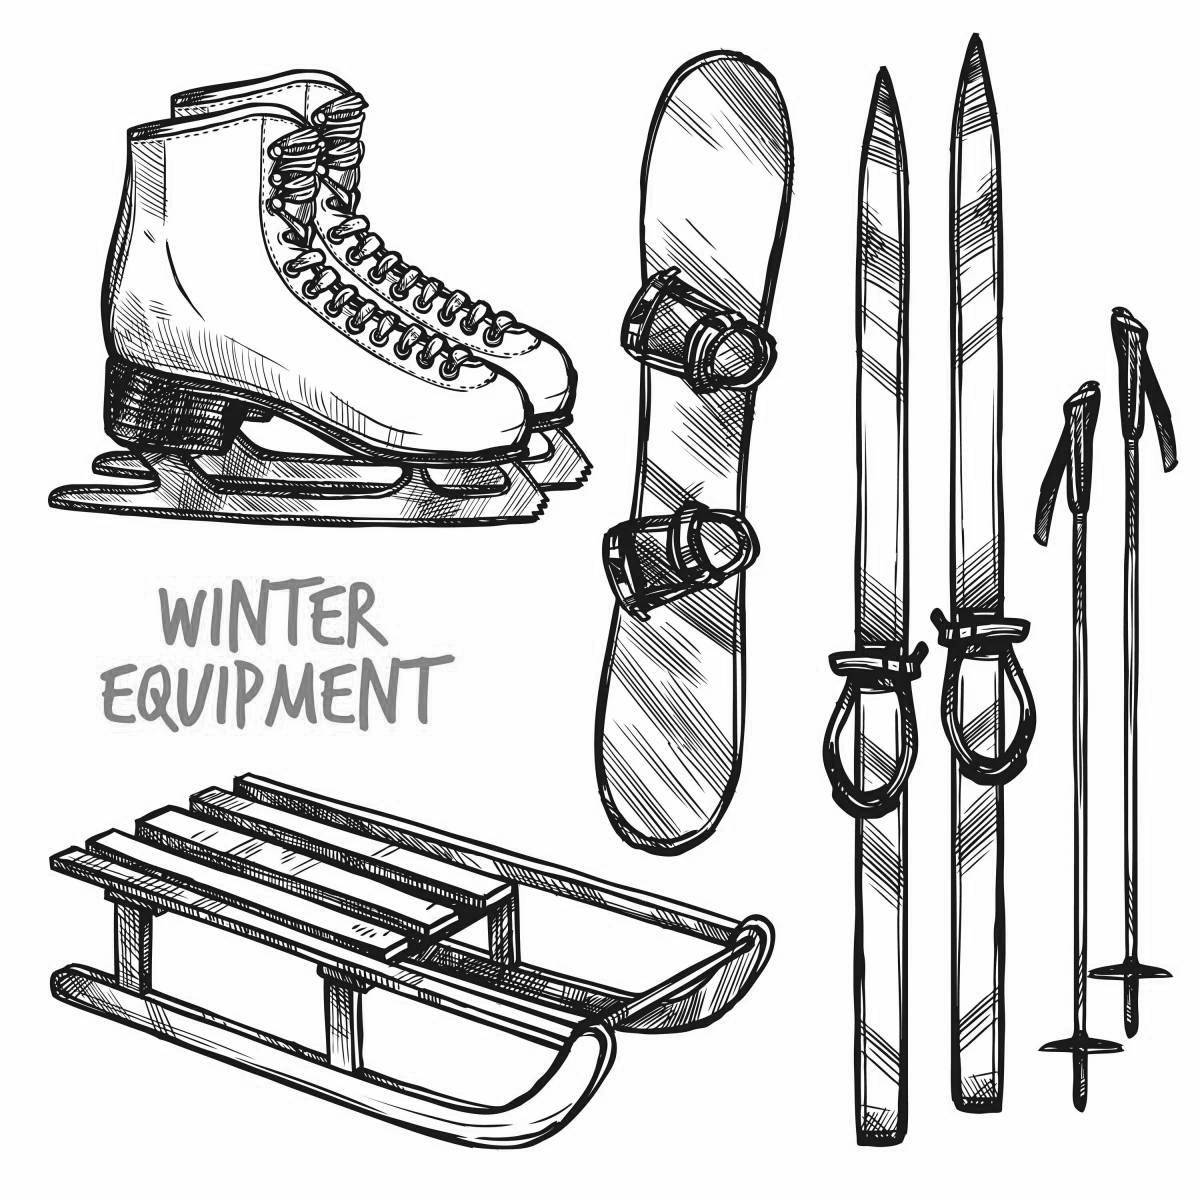 Joyful skis, skates, sleds, coloring